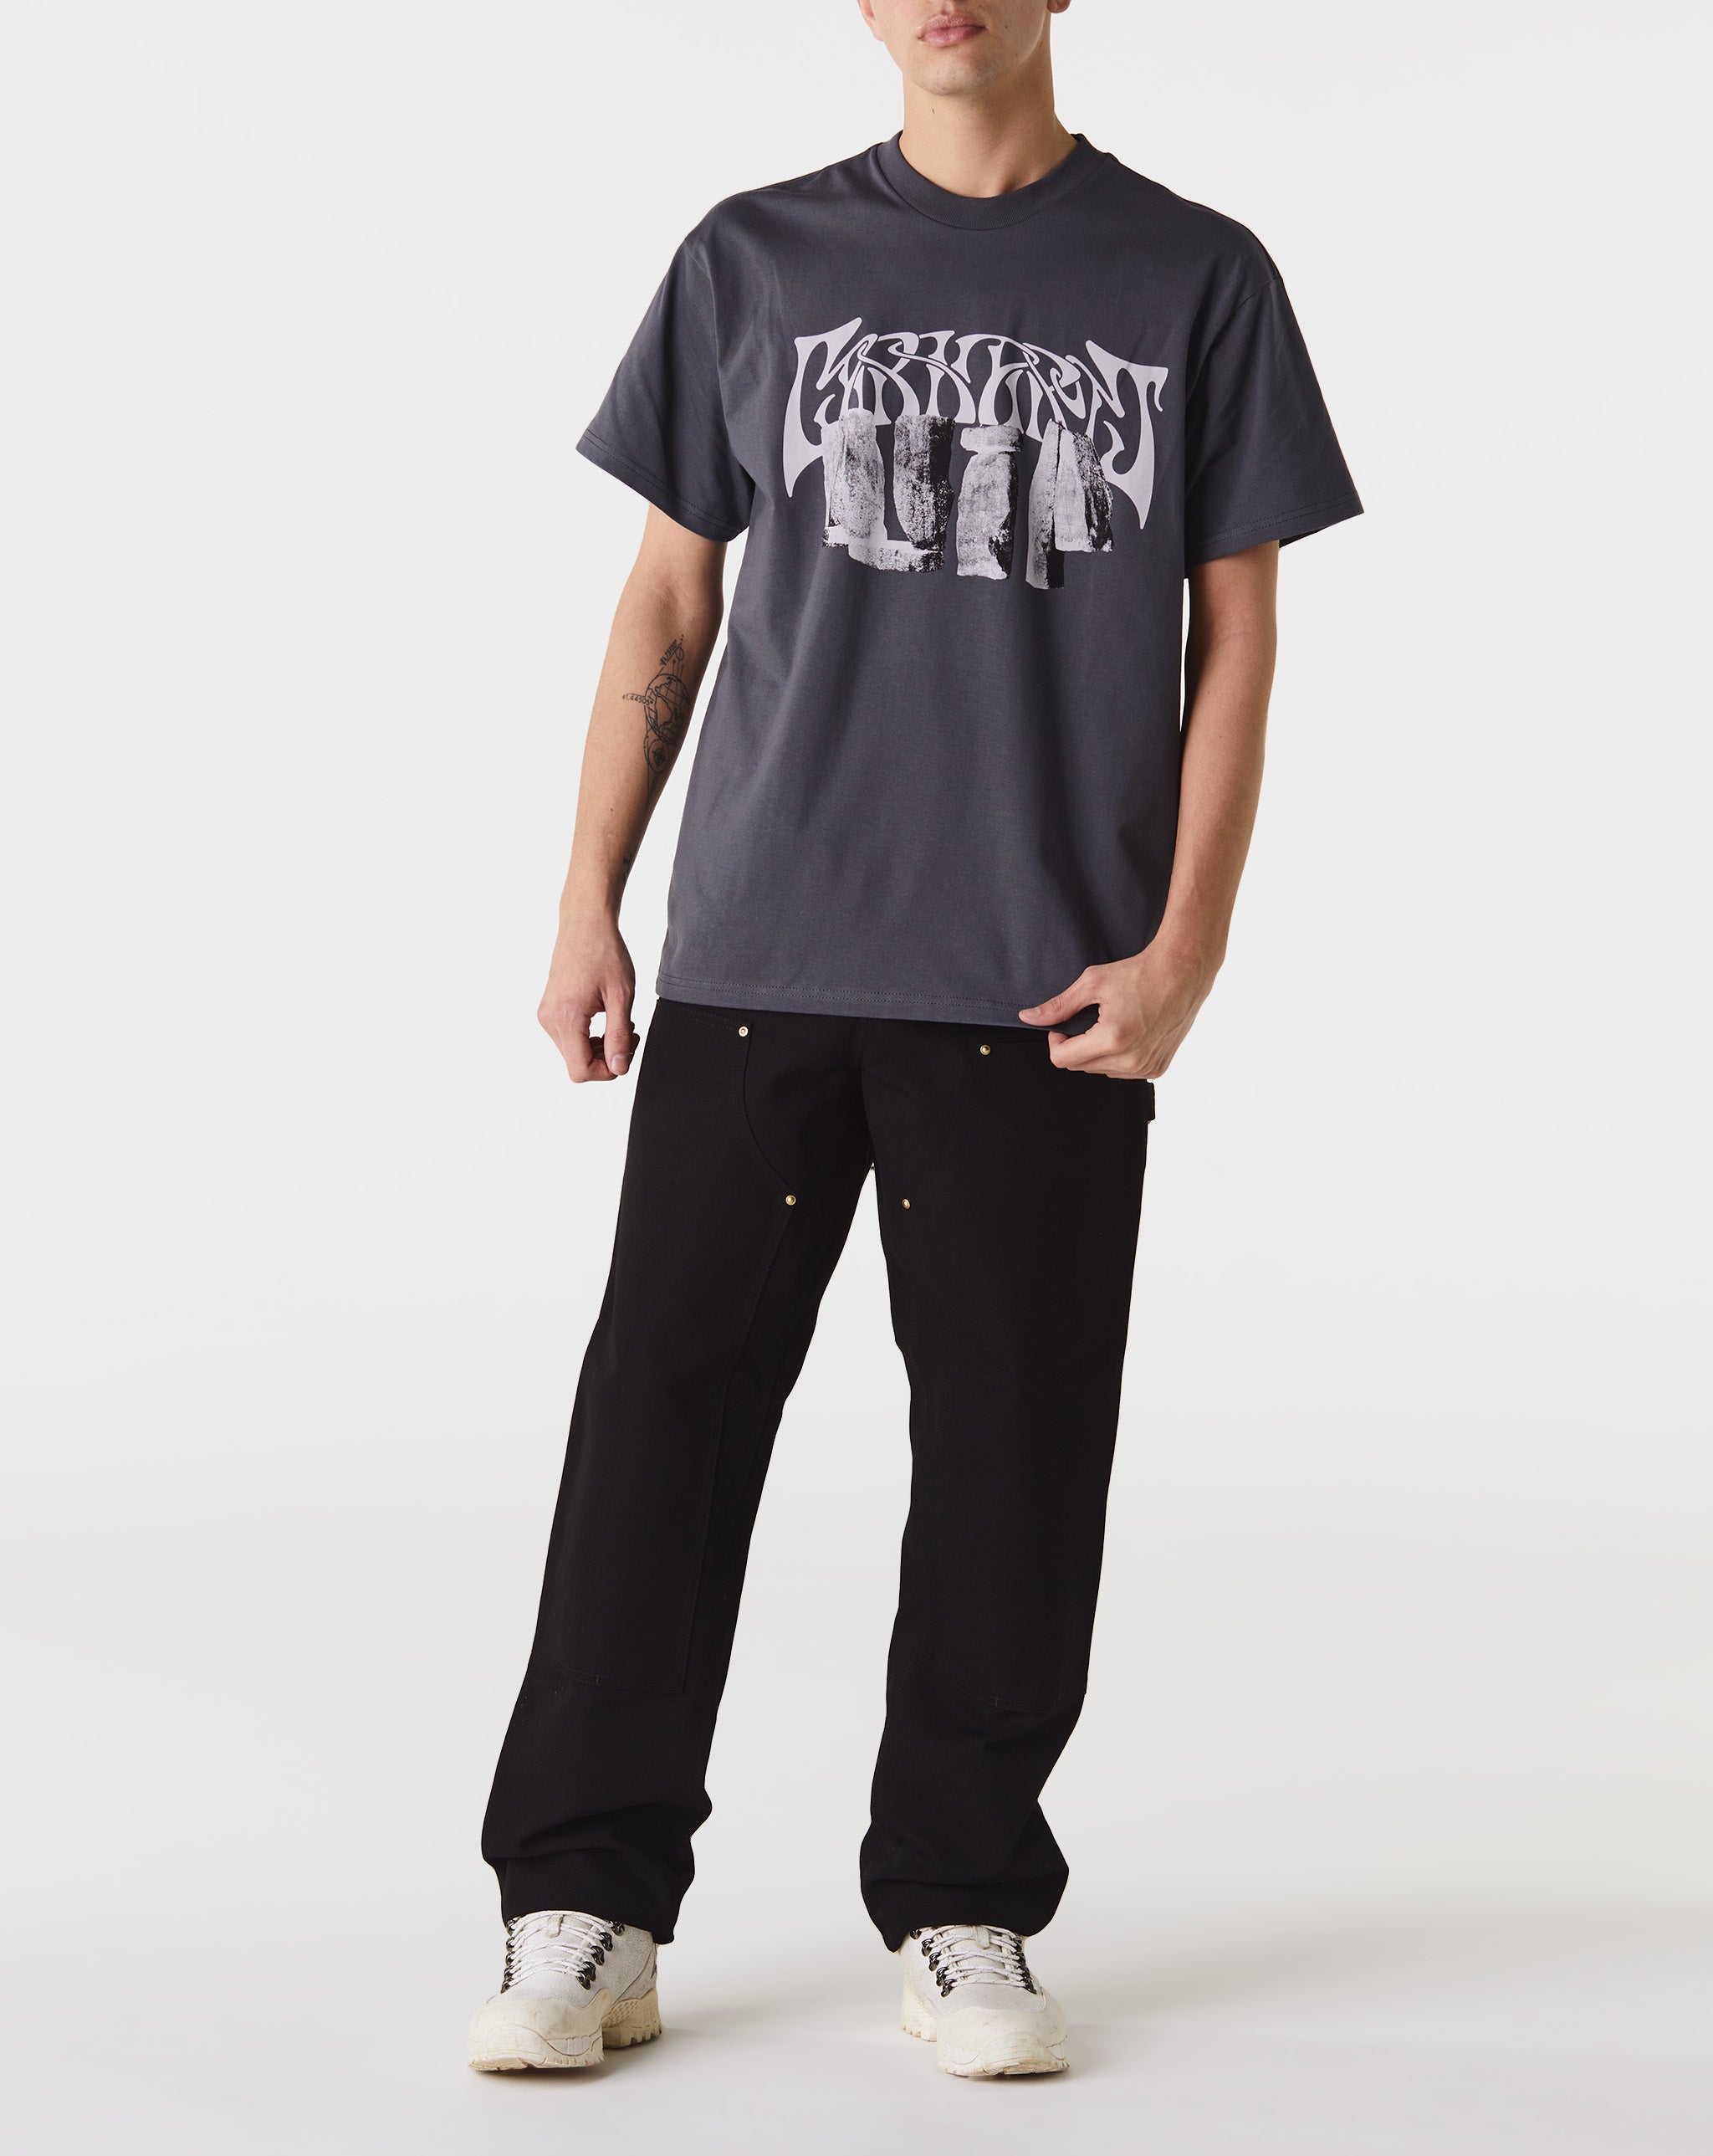 Carhartt WIP Pagan T-Shirt  - Cheap Urlfreeze Jordan outlet